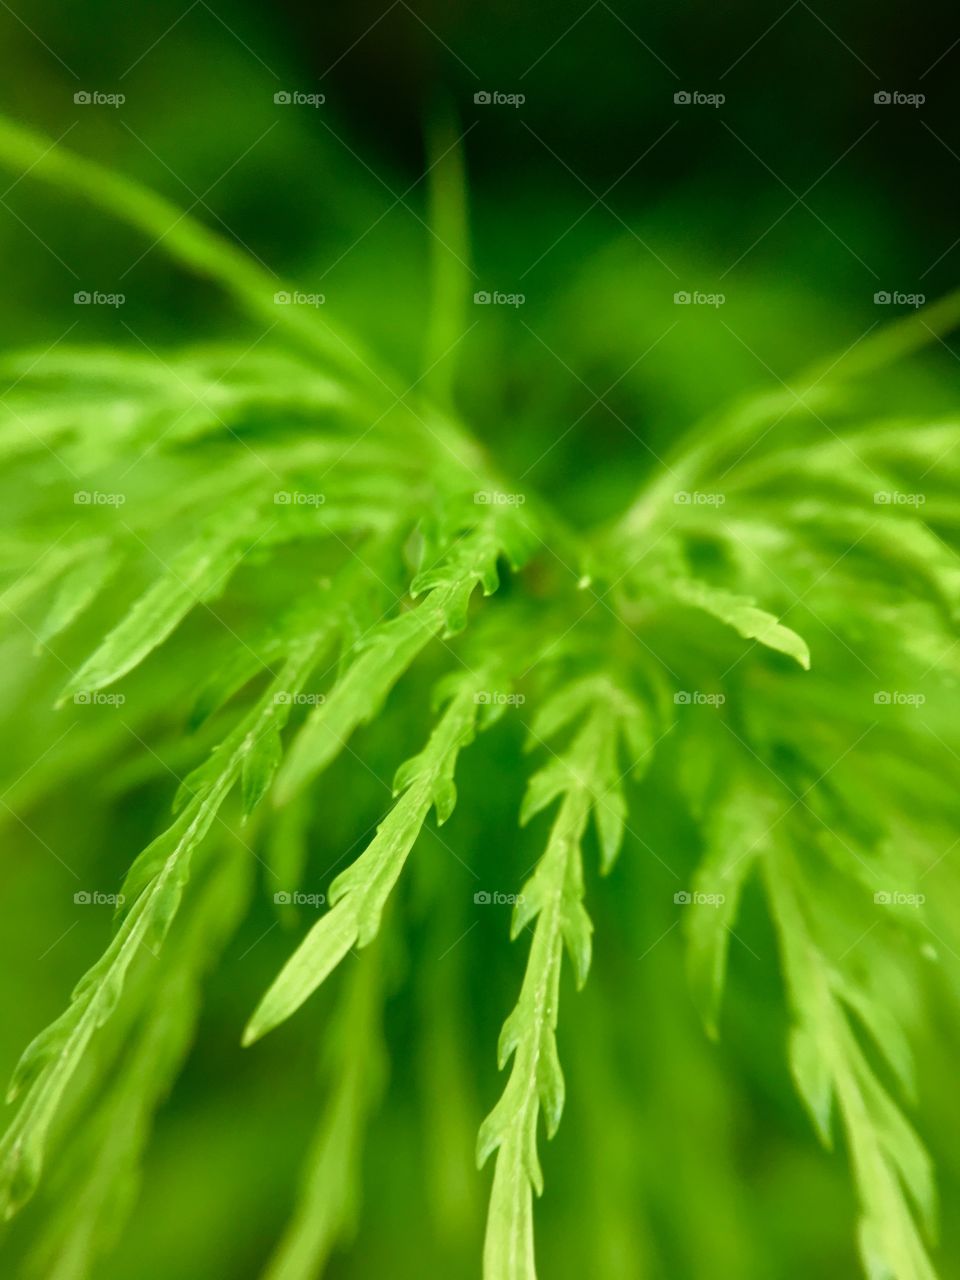 Green fern closeup.